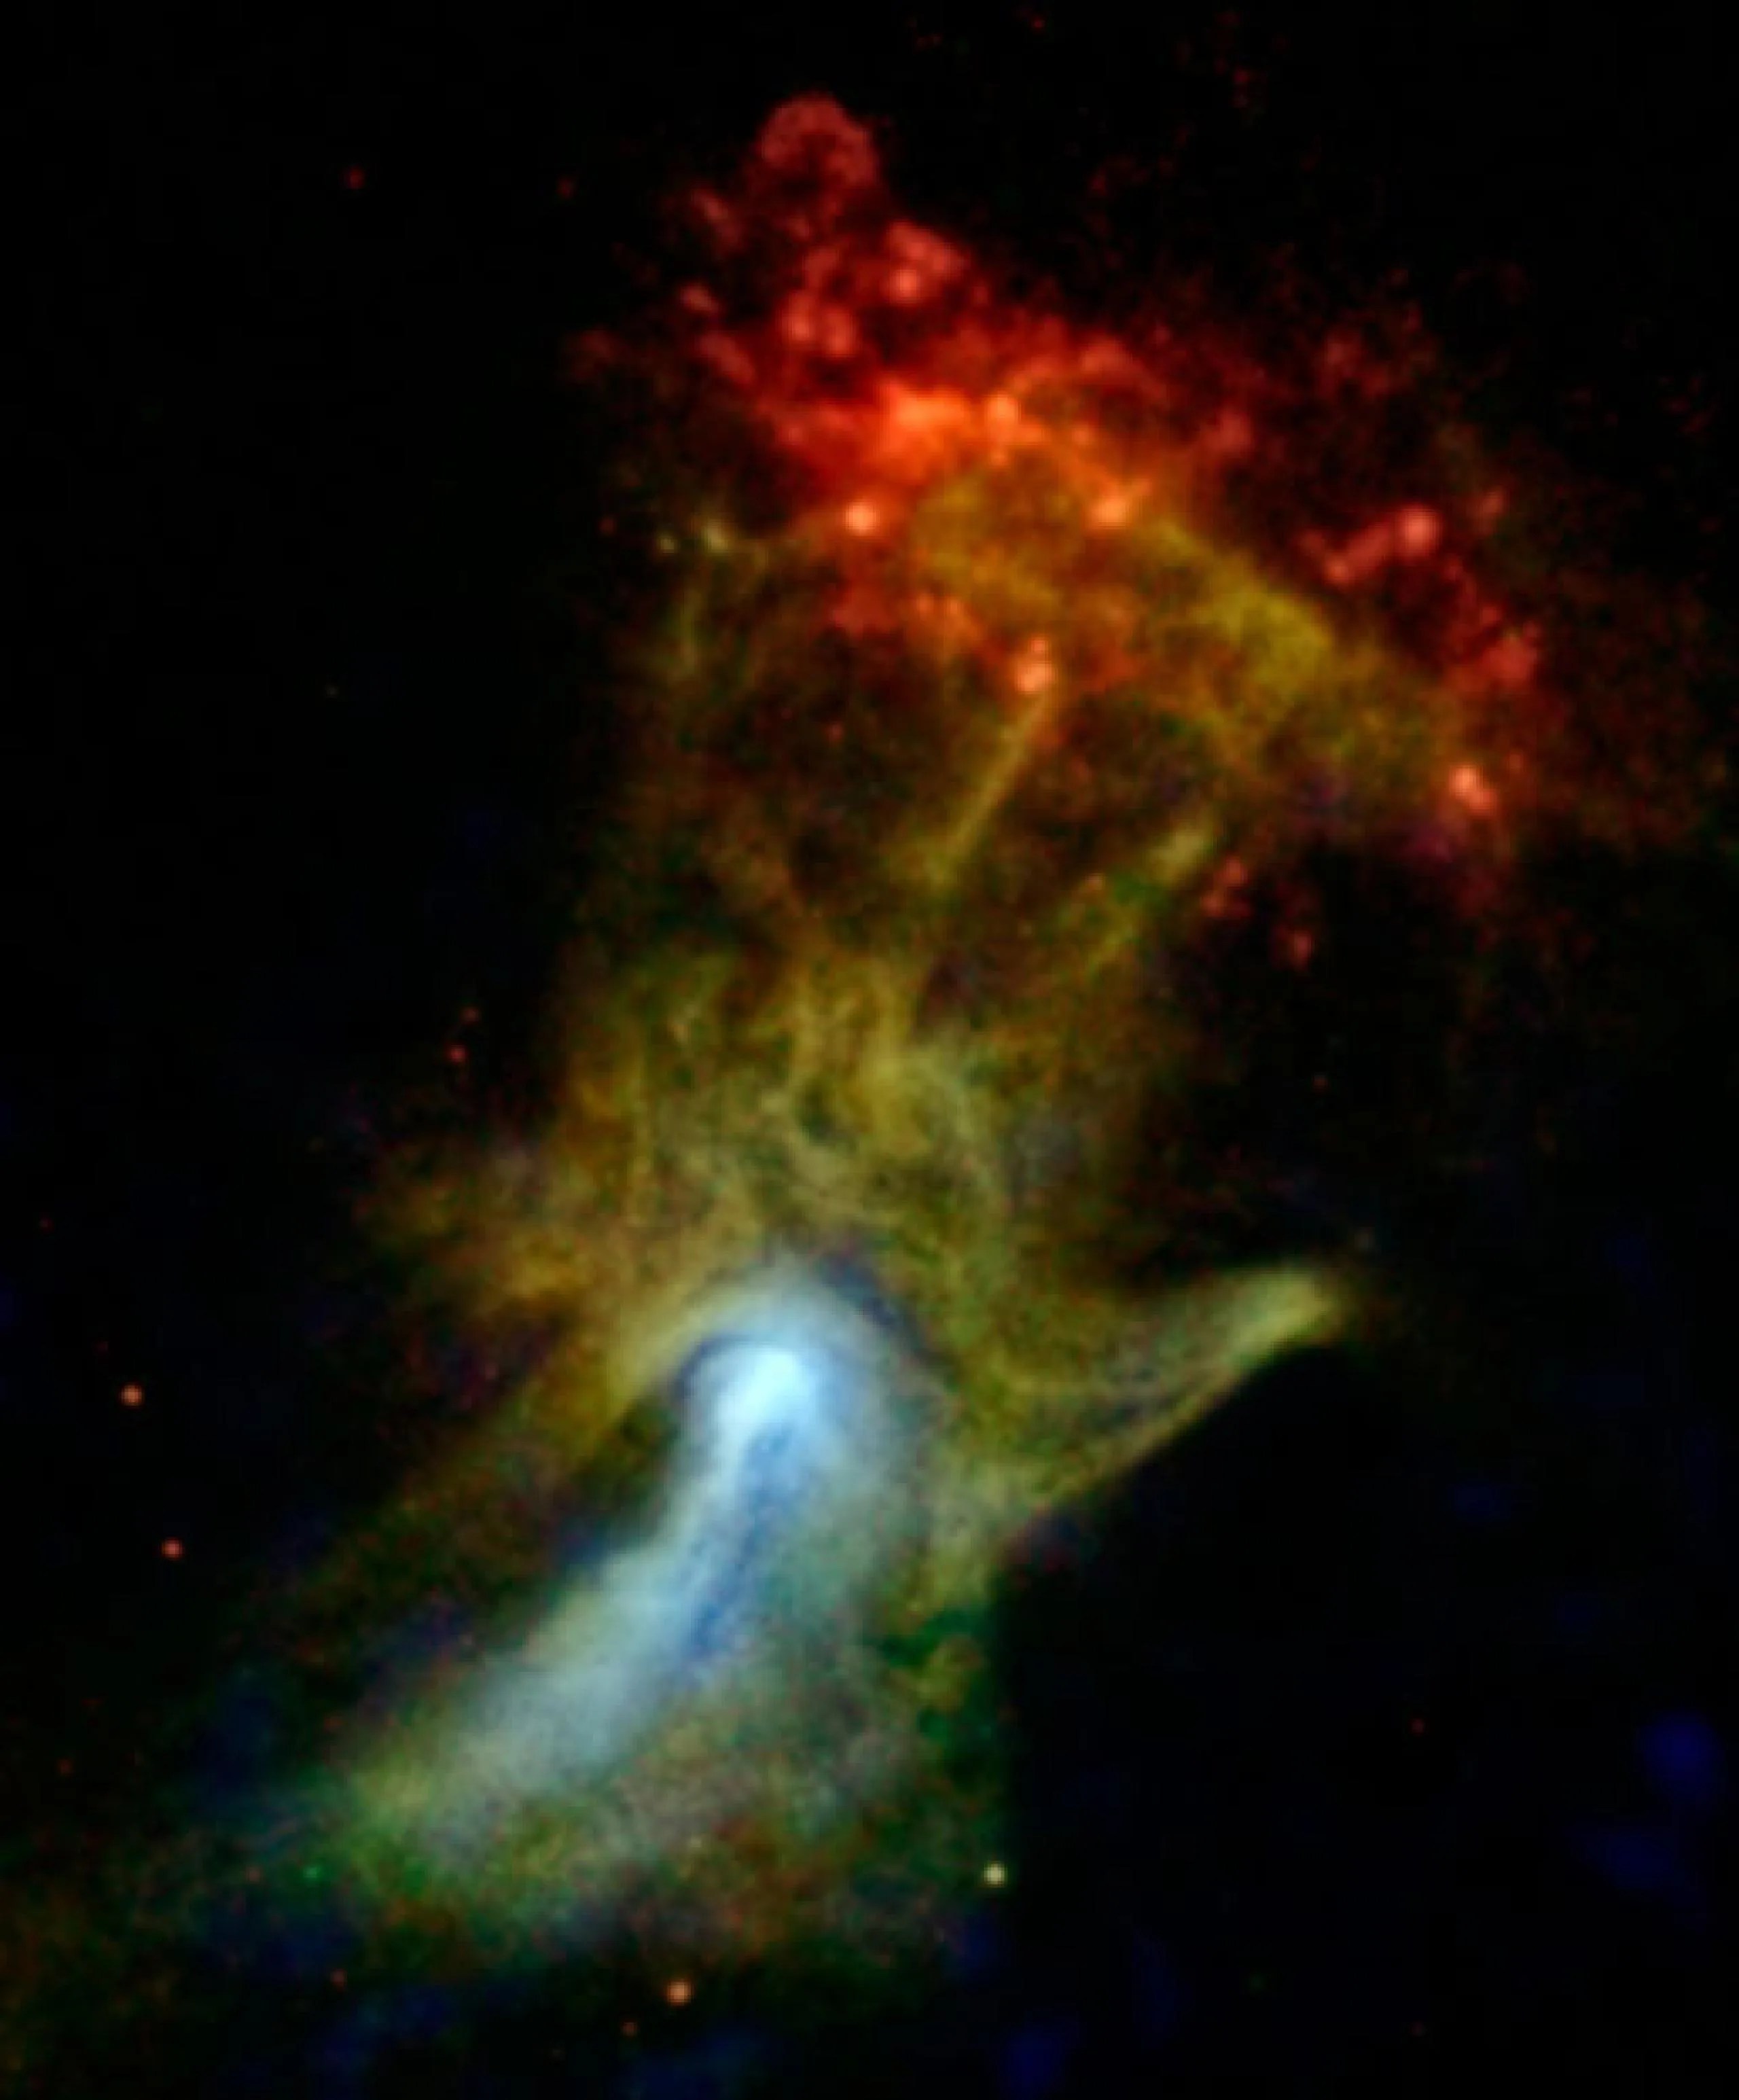 Se podría pensar que la mano parece una radiografía médica, pero en realidad es una nube de material expulsado de una estrella que explotó. Créditos: NASA/JPL-Caltech/McGill